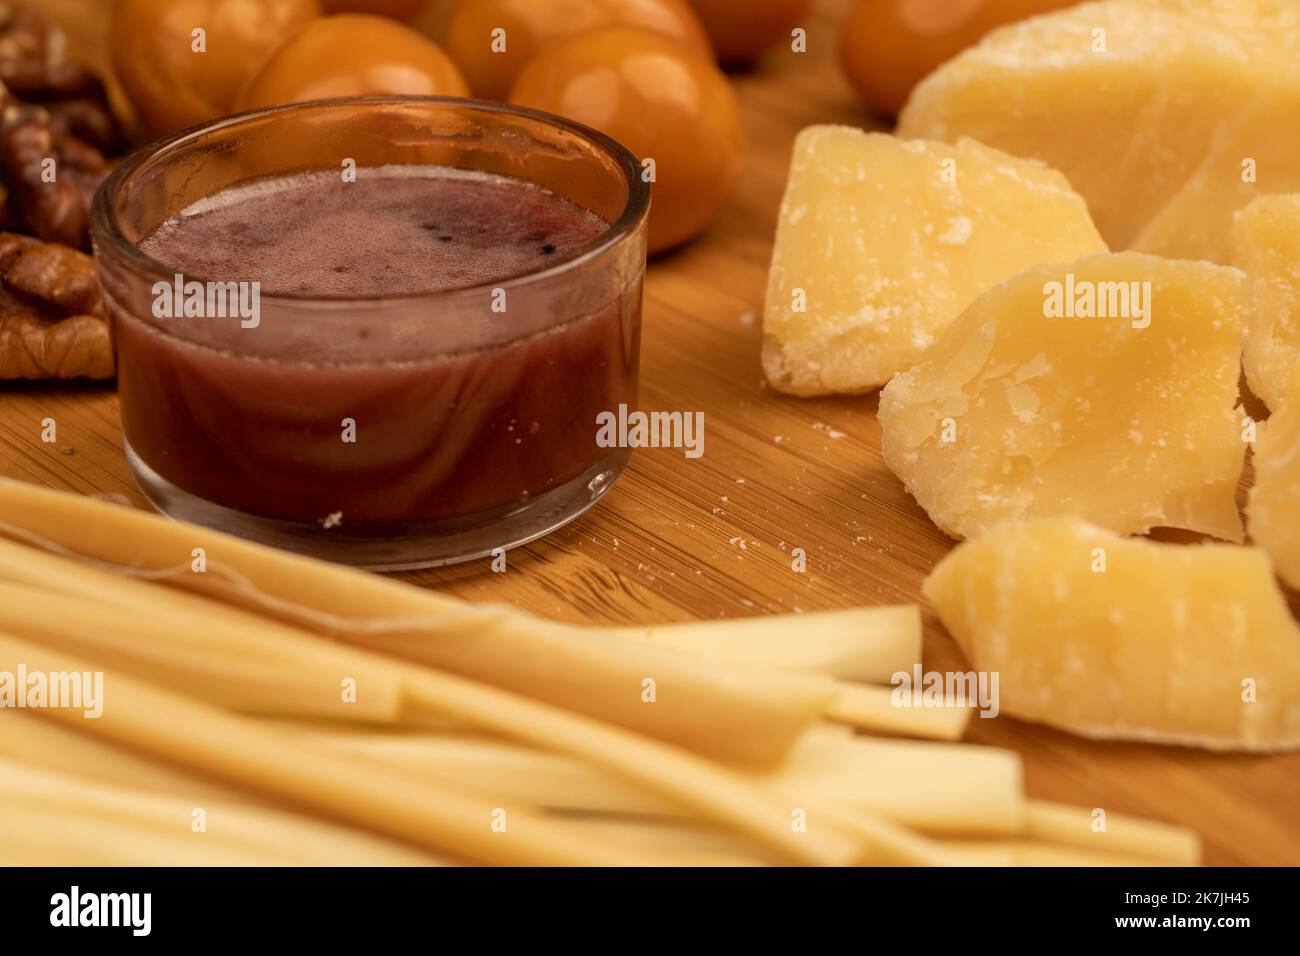 Diverses variétés de fromage, de noix, d'œufs de caille fumés et de miel dans un vase en verre sur une surface en bois. Banque D'Images